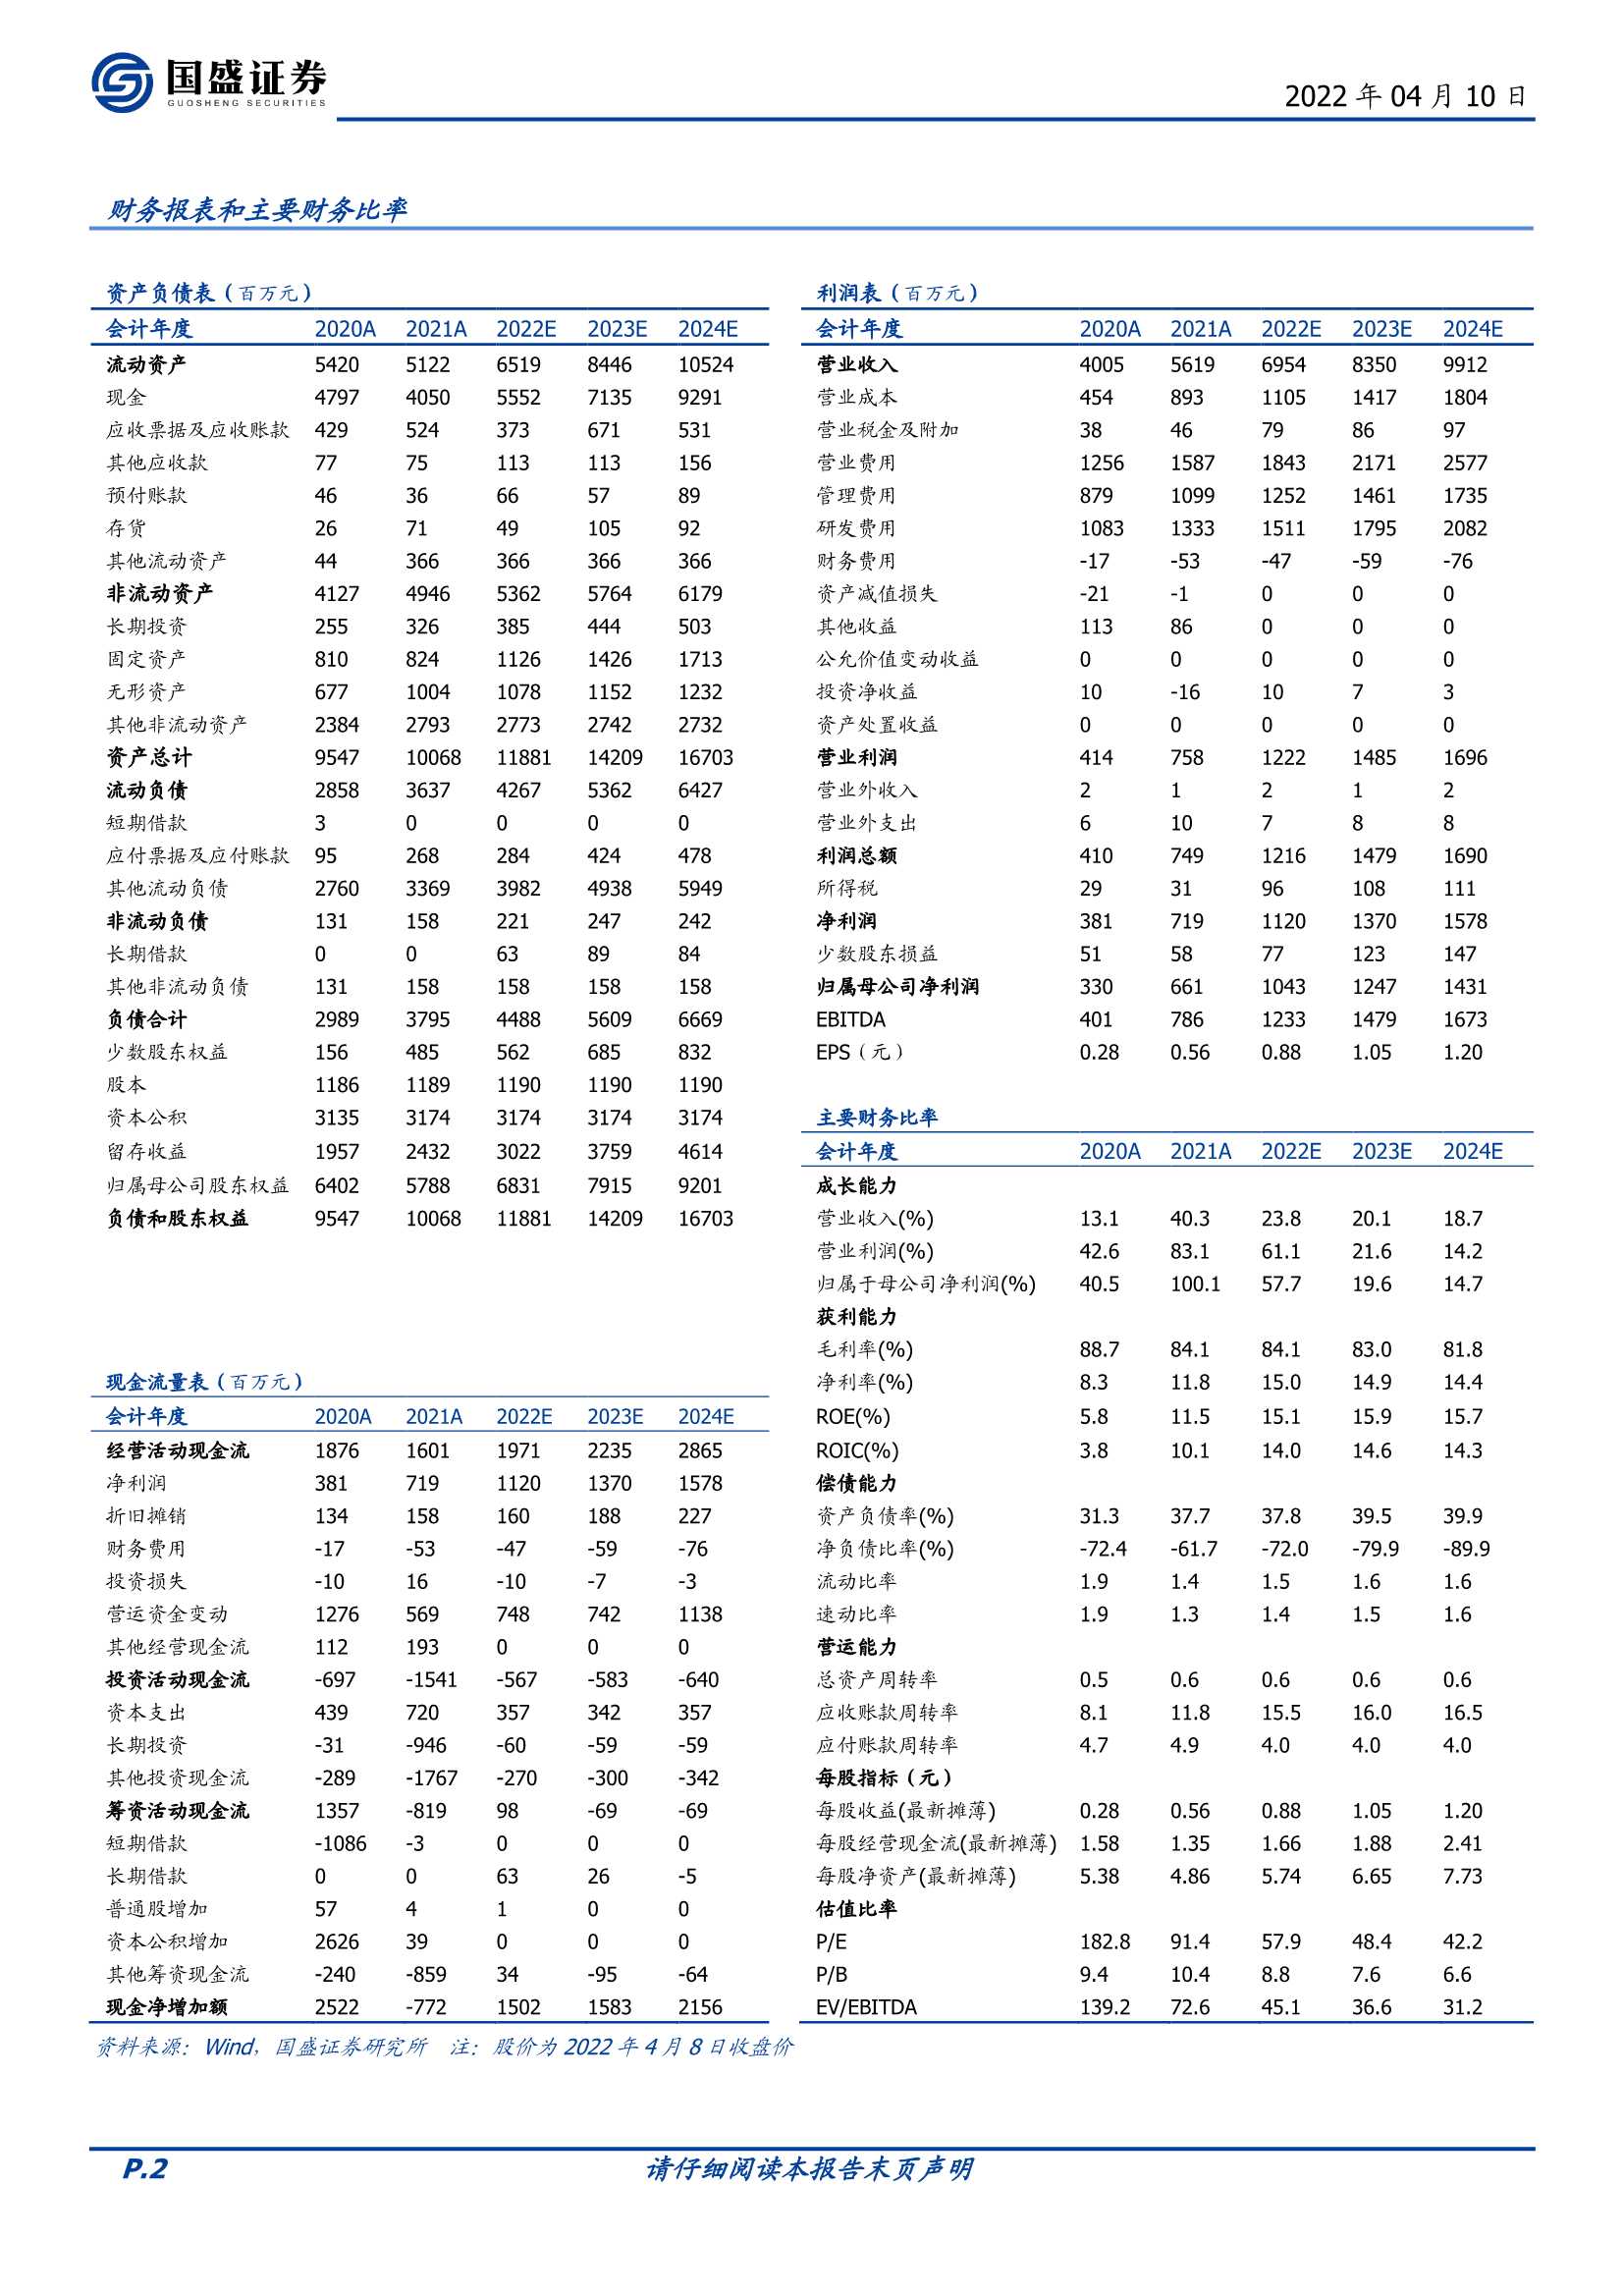 广联达-002410-被低估的云造价成长空间-20220410-国盛证券-20页